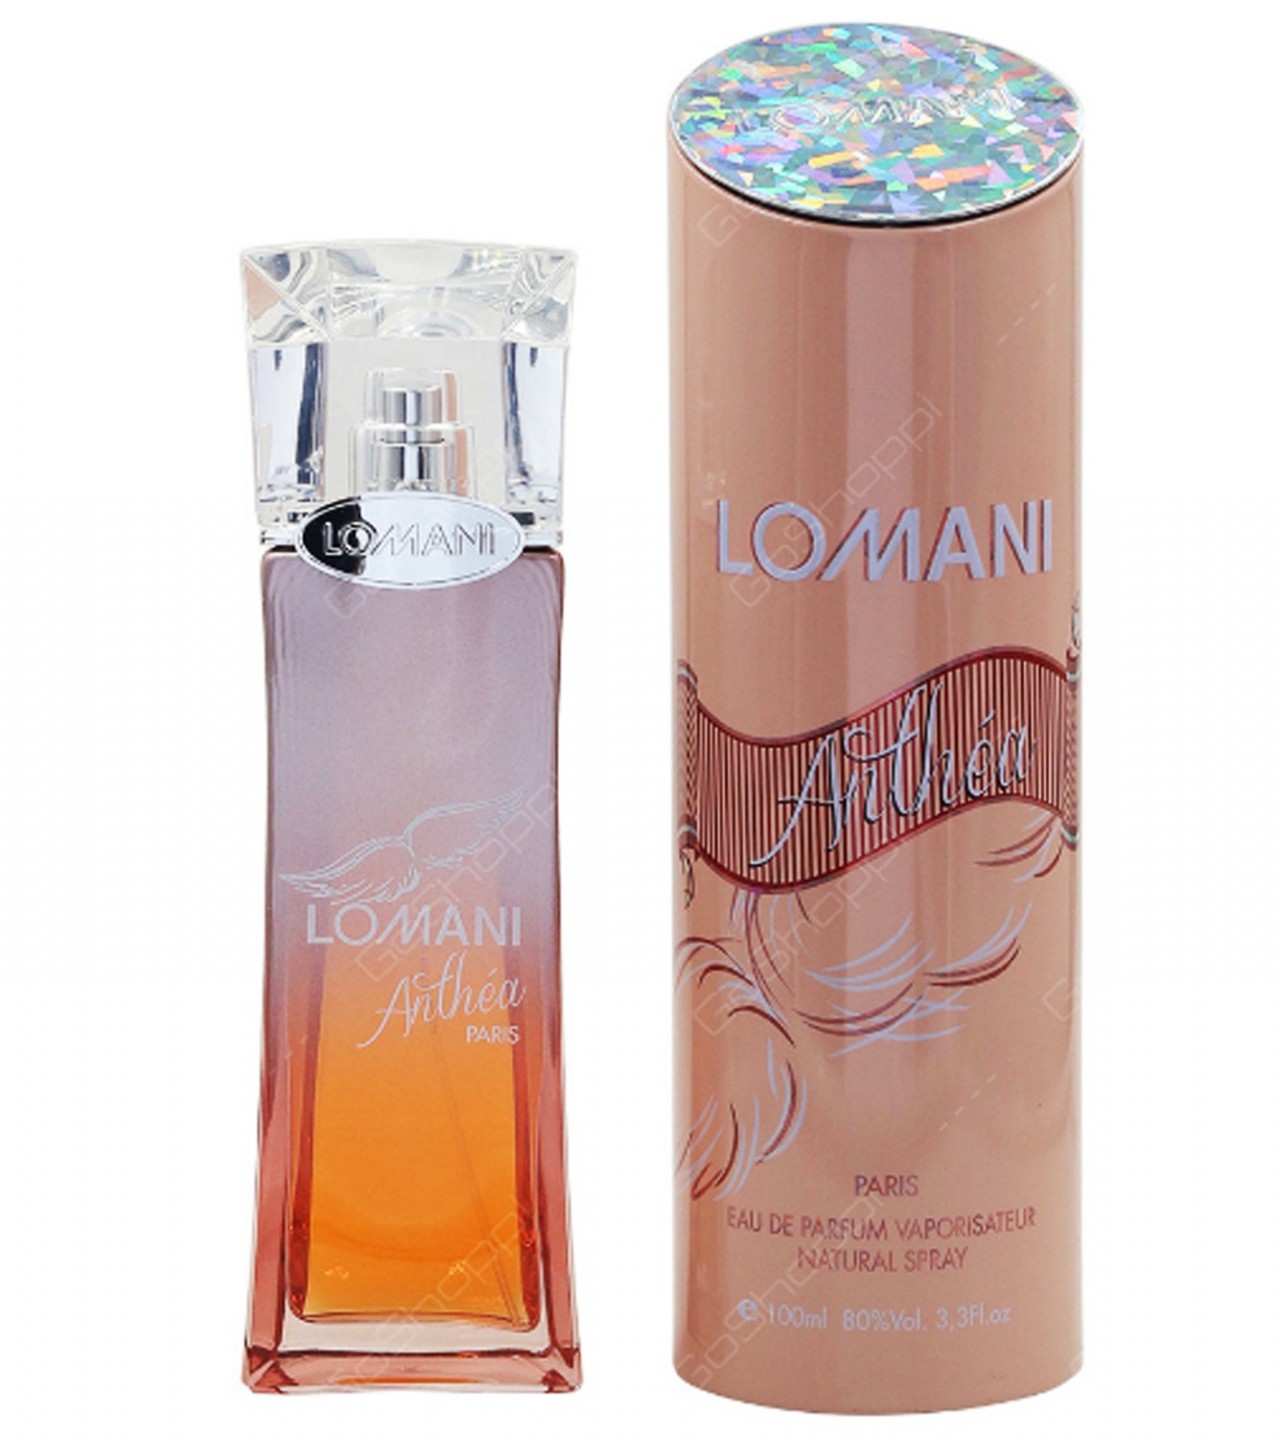 Lomani Anthea Perfume For Women - Eau De Parfum - 100 ml